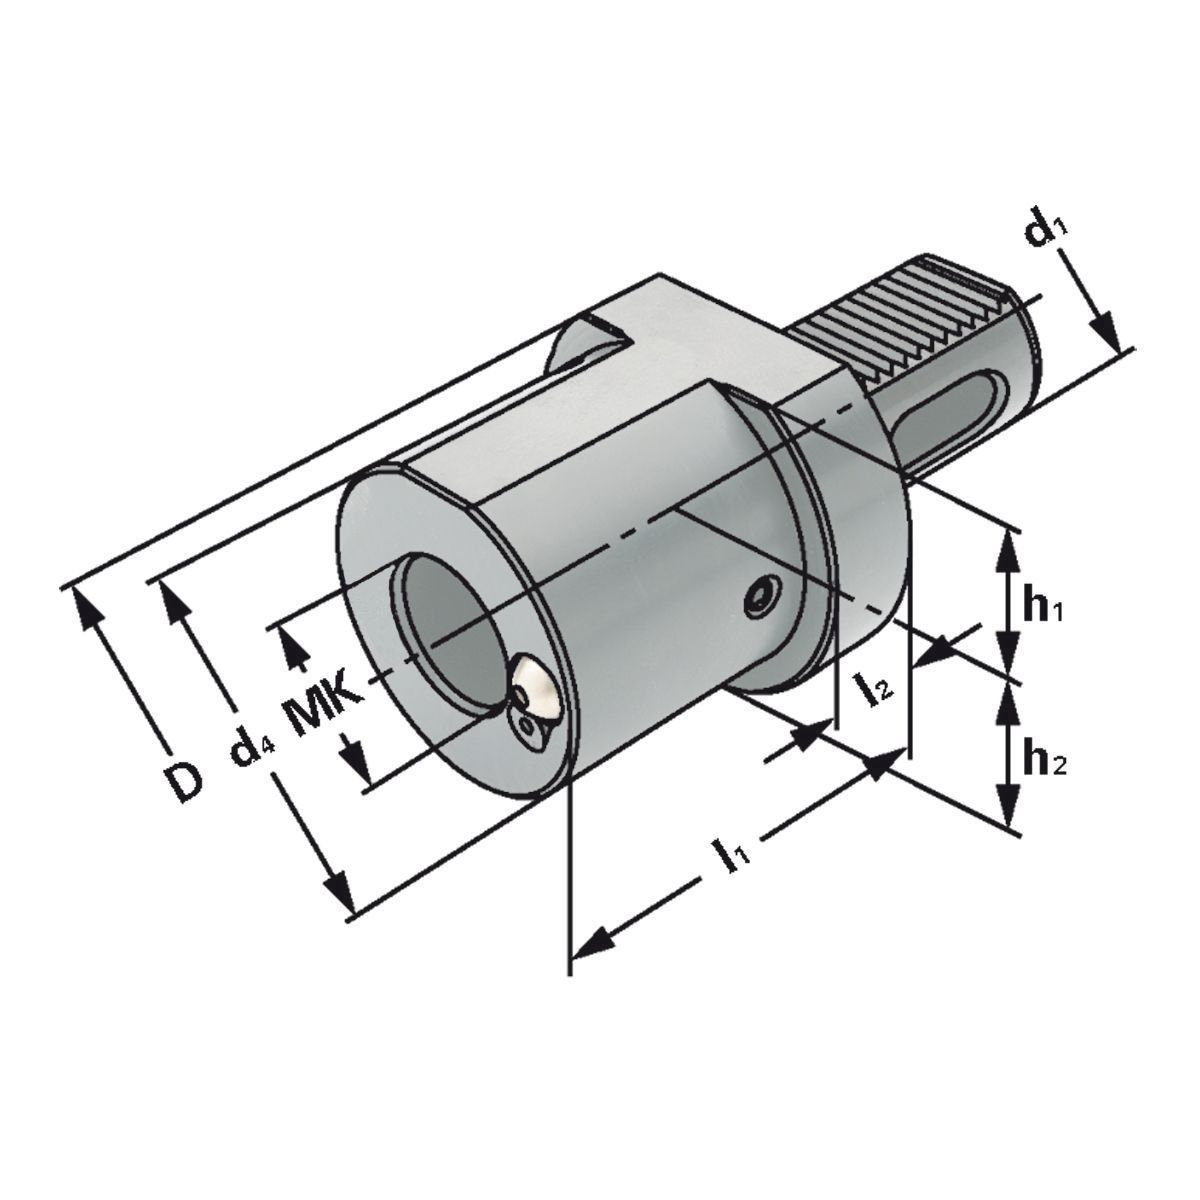 MK-Bohrerhalter F1-30xMK1 DIN 69880 (ISO 10889)